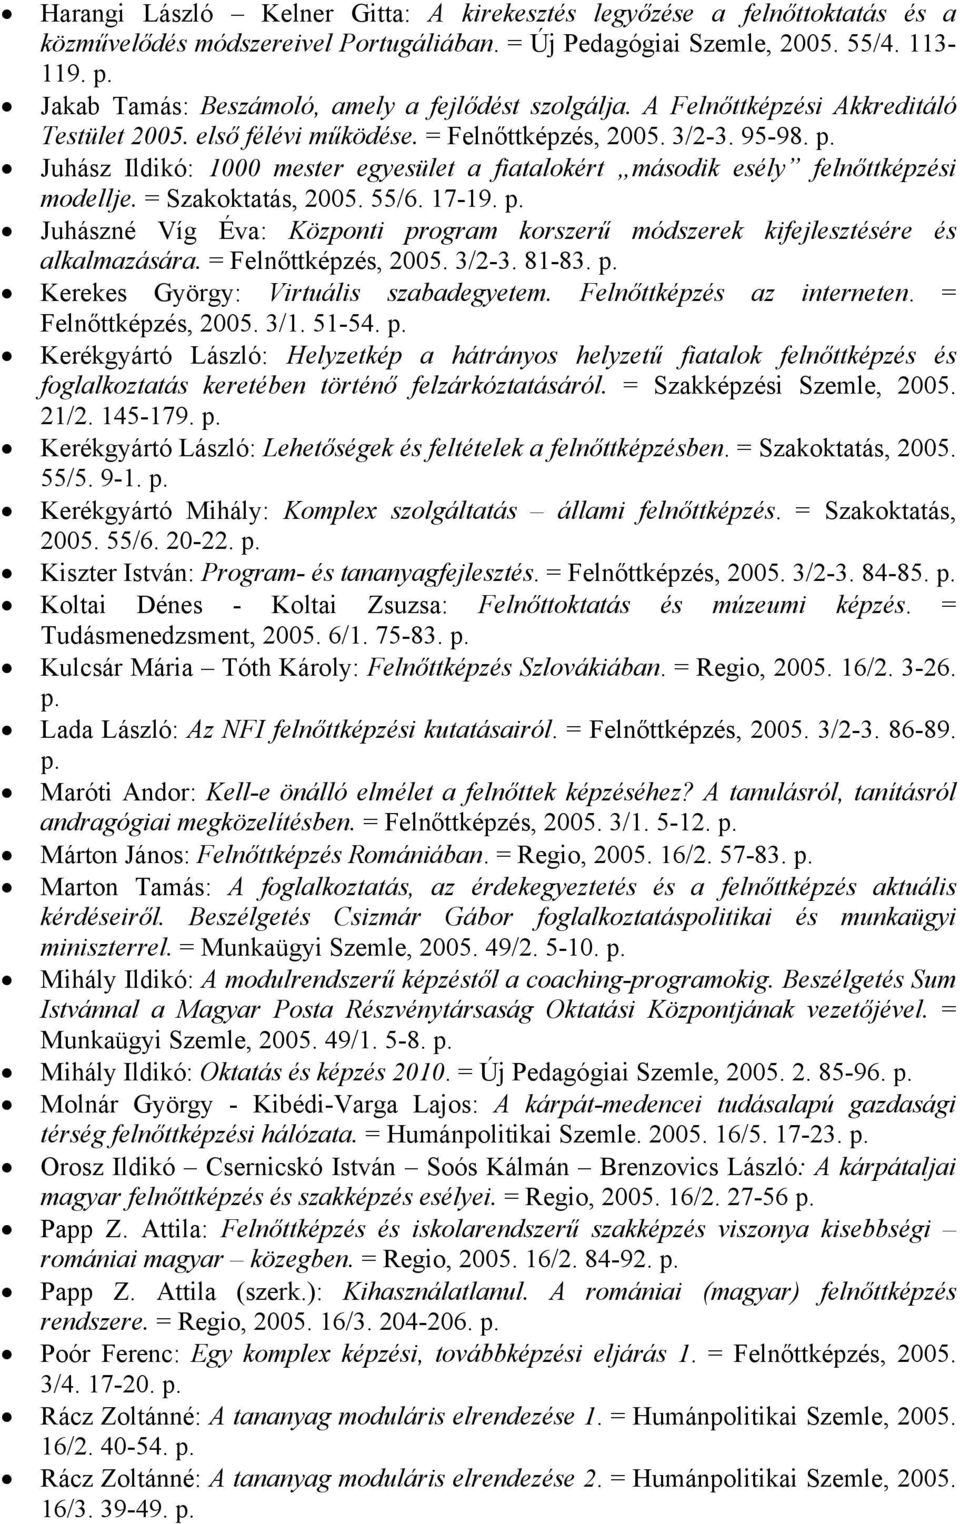 Juhász Ildikó: 1000 mester egyesület a fiatalokért második esély felnőttképzési modellje. = Szakoktatás, 2005. 55/6. 17-19.